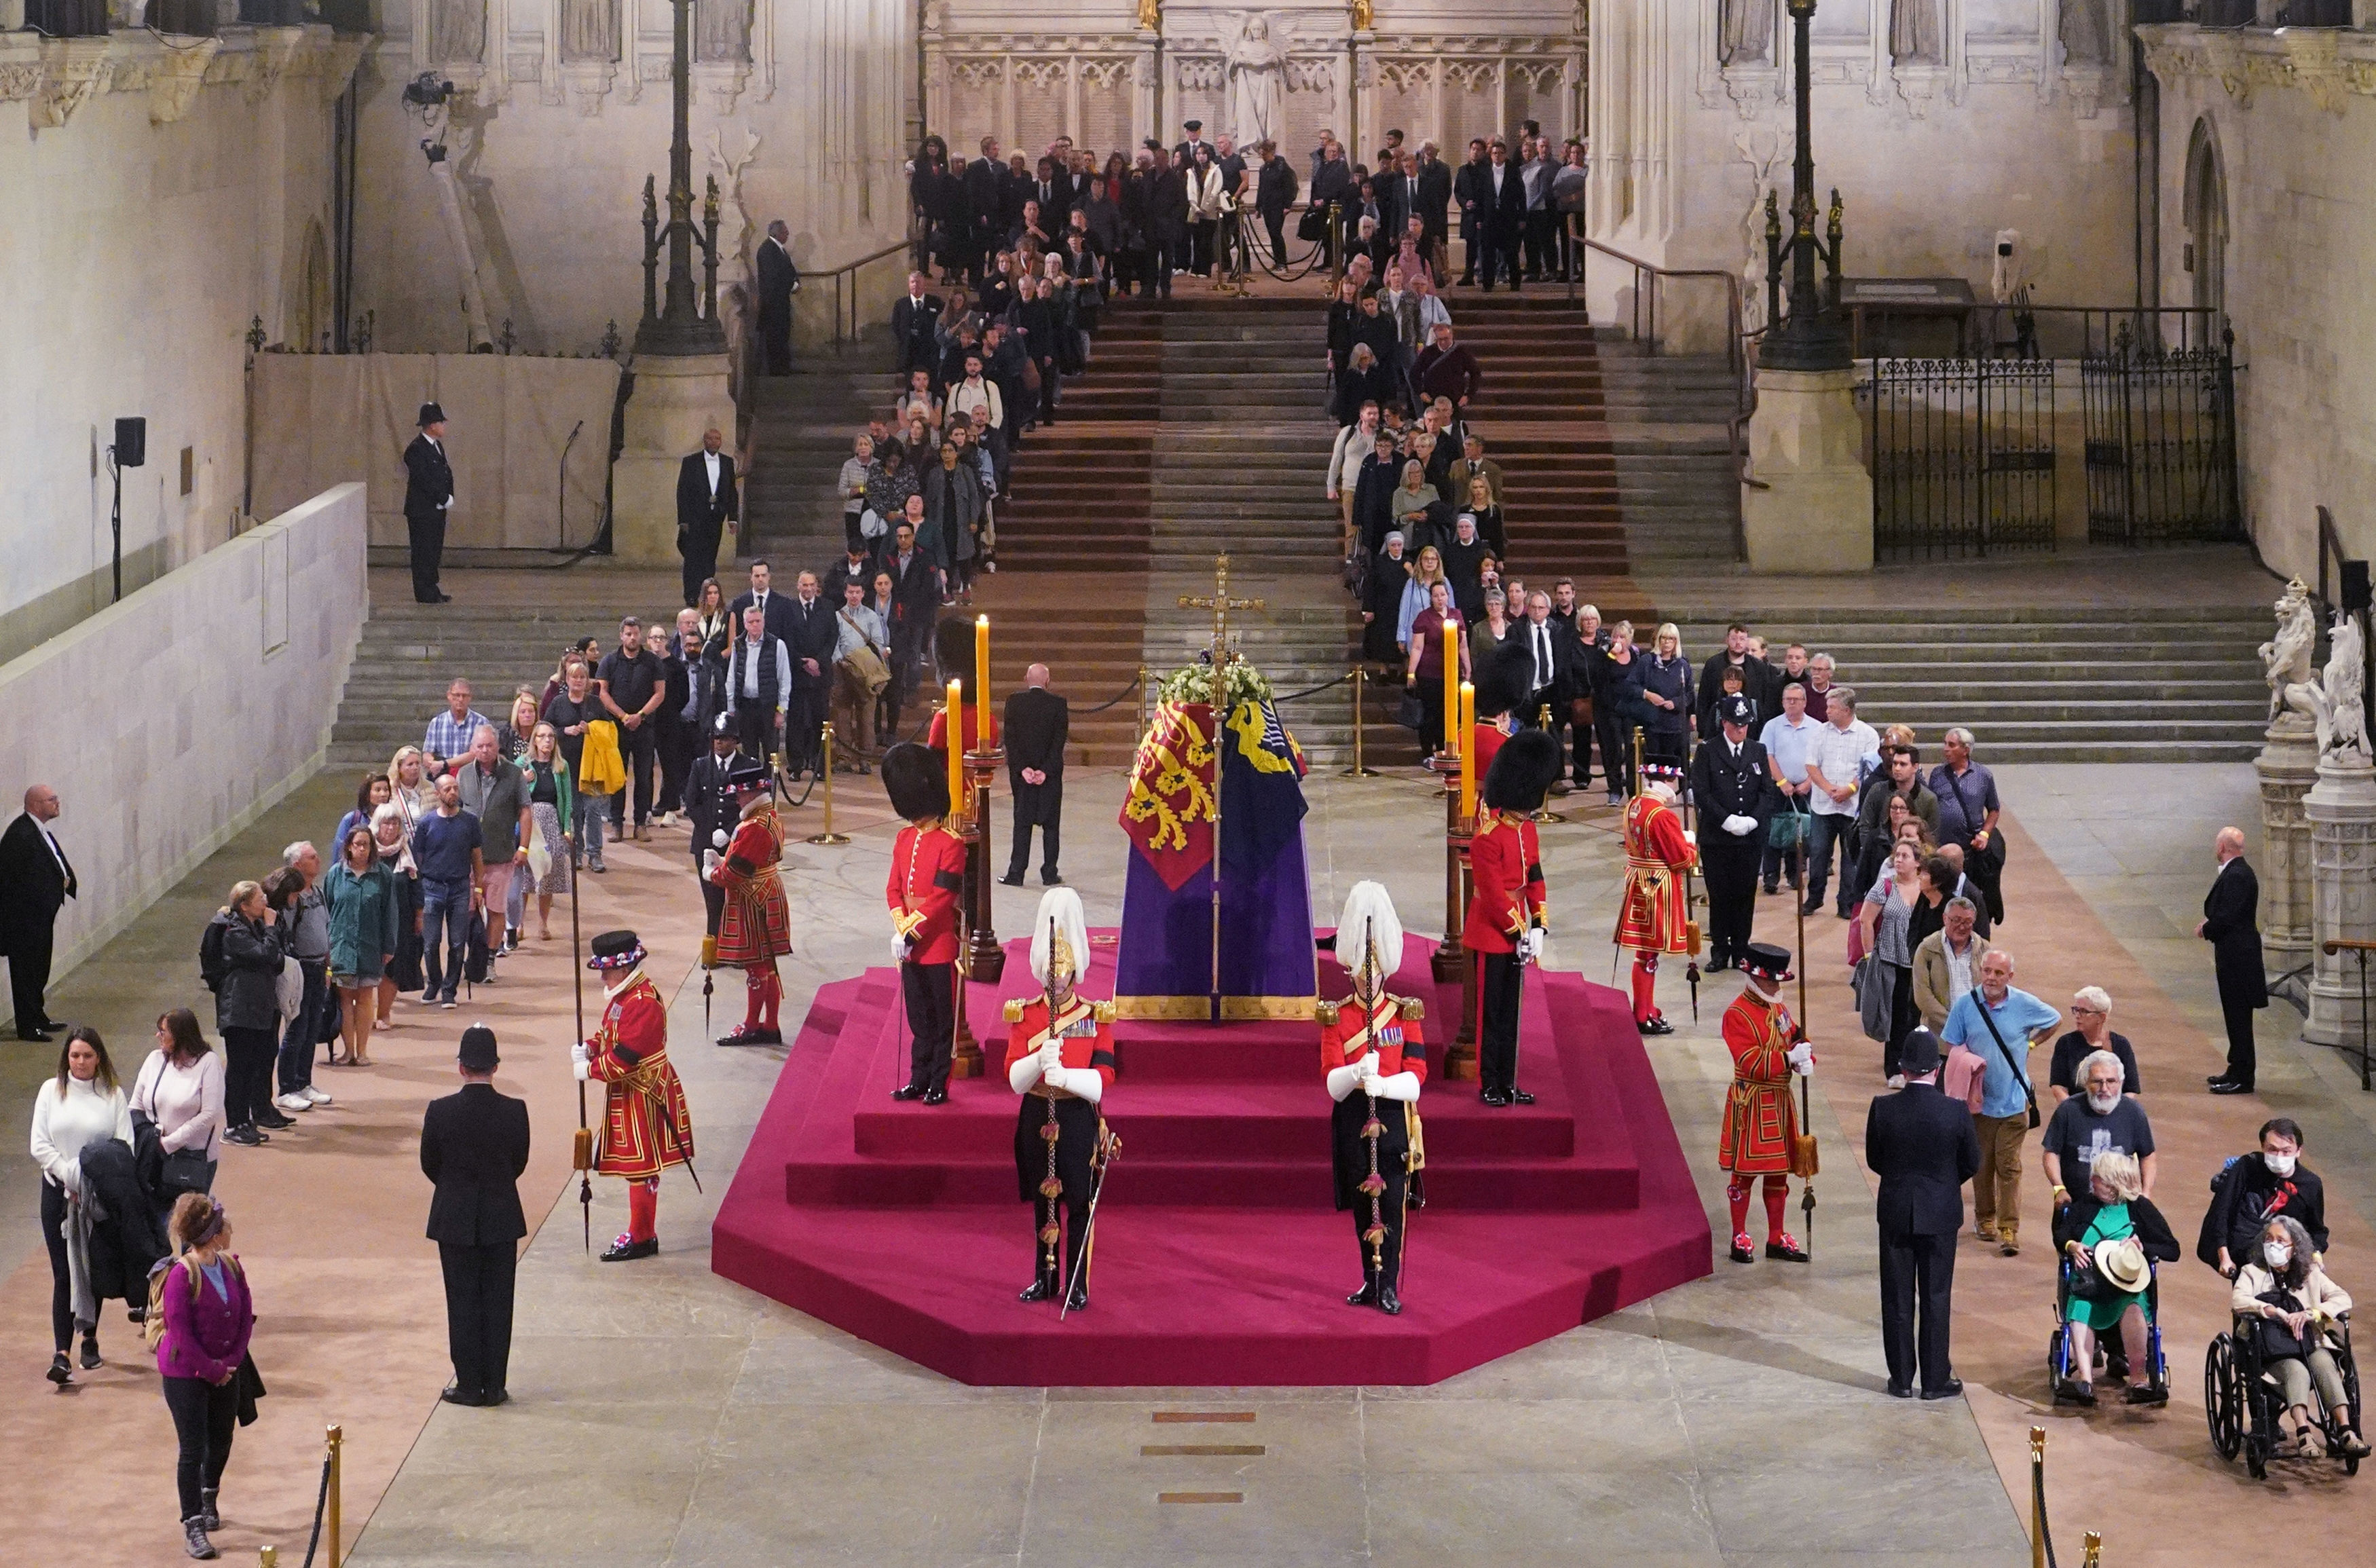 Ocho militares en uniforme de gala portaron el ataúd de la monarca quien falleció el pasado jueves a los 96 años, hasta un catafalco púrpura situado en el interior del Westminster Hall, la parte más antigua del edificio que acoge el Parlamento británico.